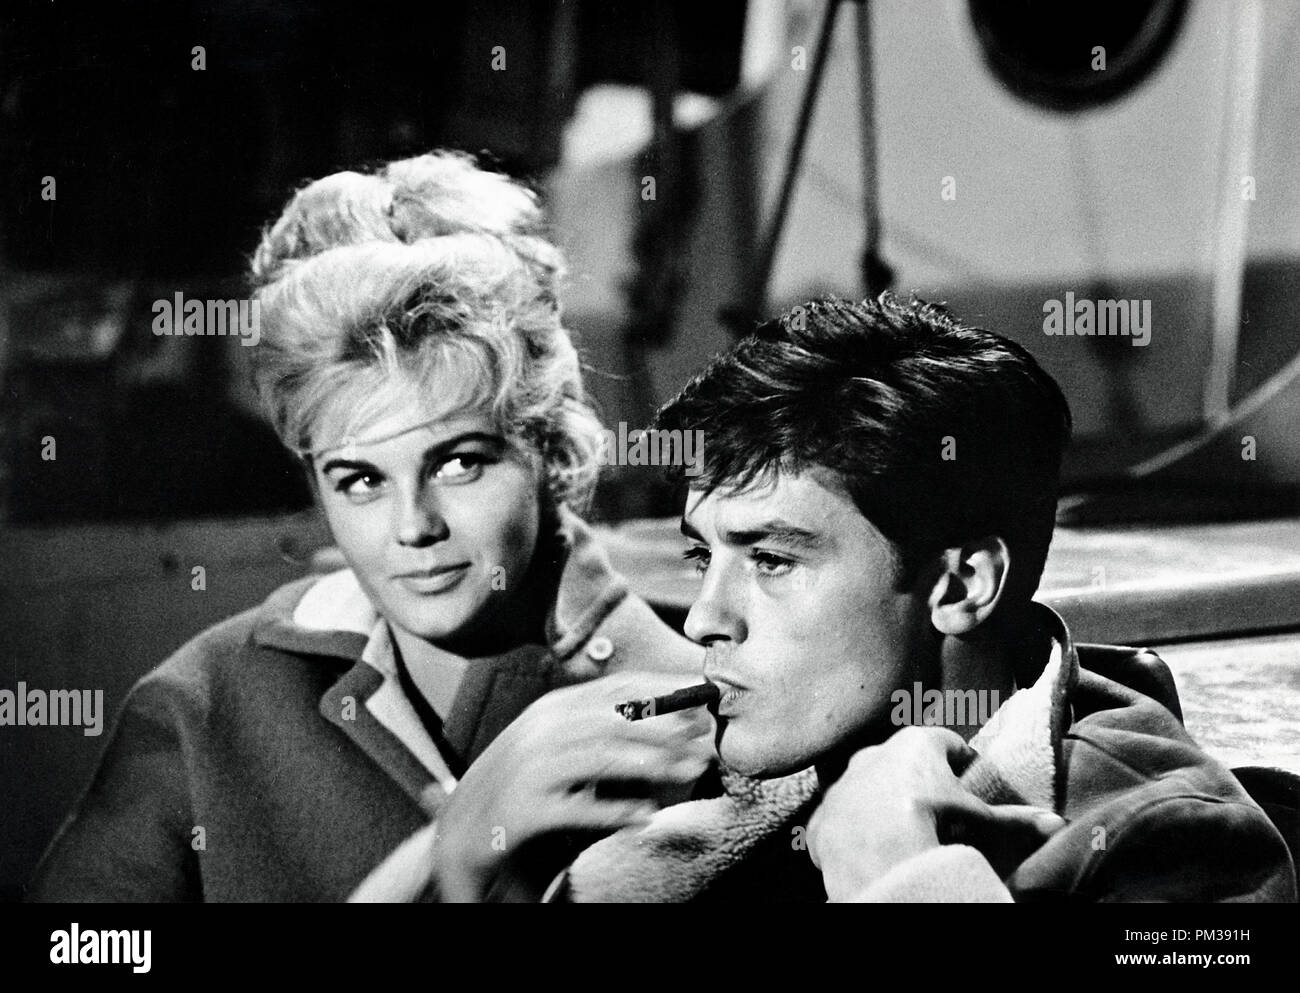 Alain Delon y Ann-Margret durante la realización de "una vez al ladrón" de 1965. Archivo de referencia # 1263 005tha © CCI /El Hollywood Archive - Todos los derechos reservados Foto de stock